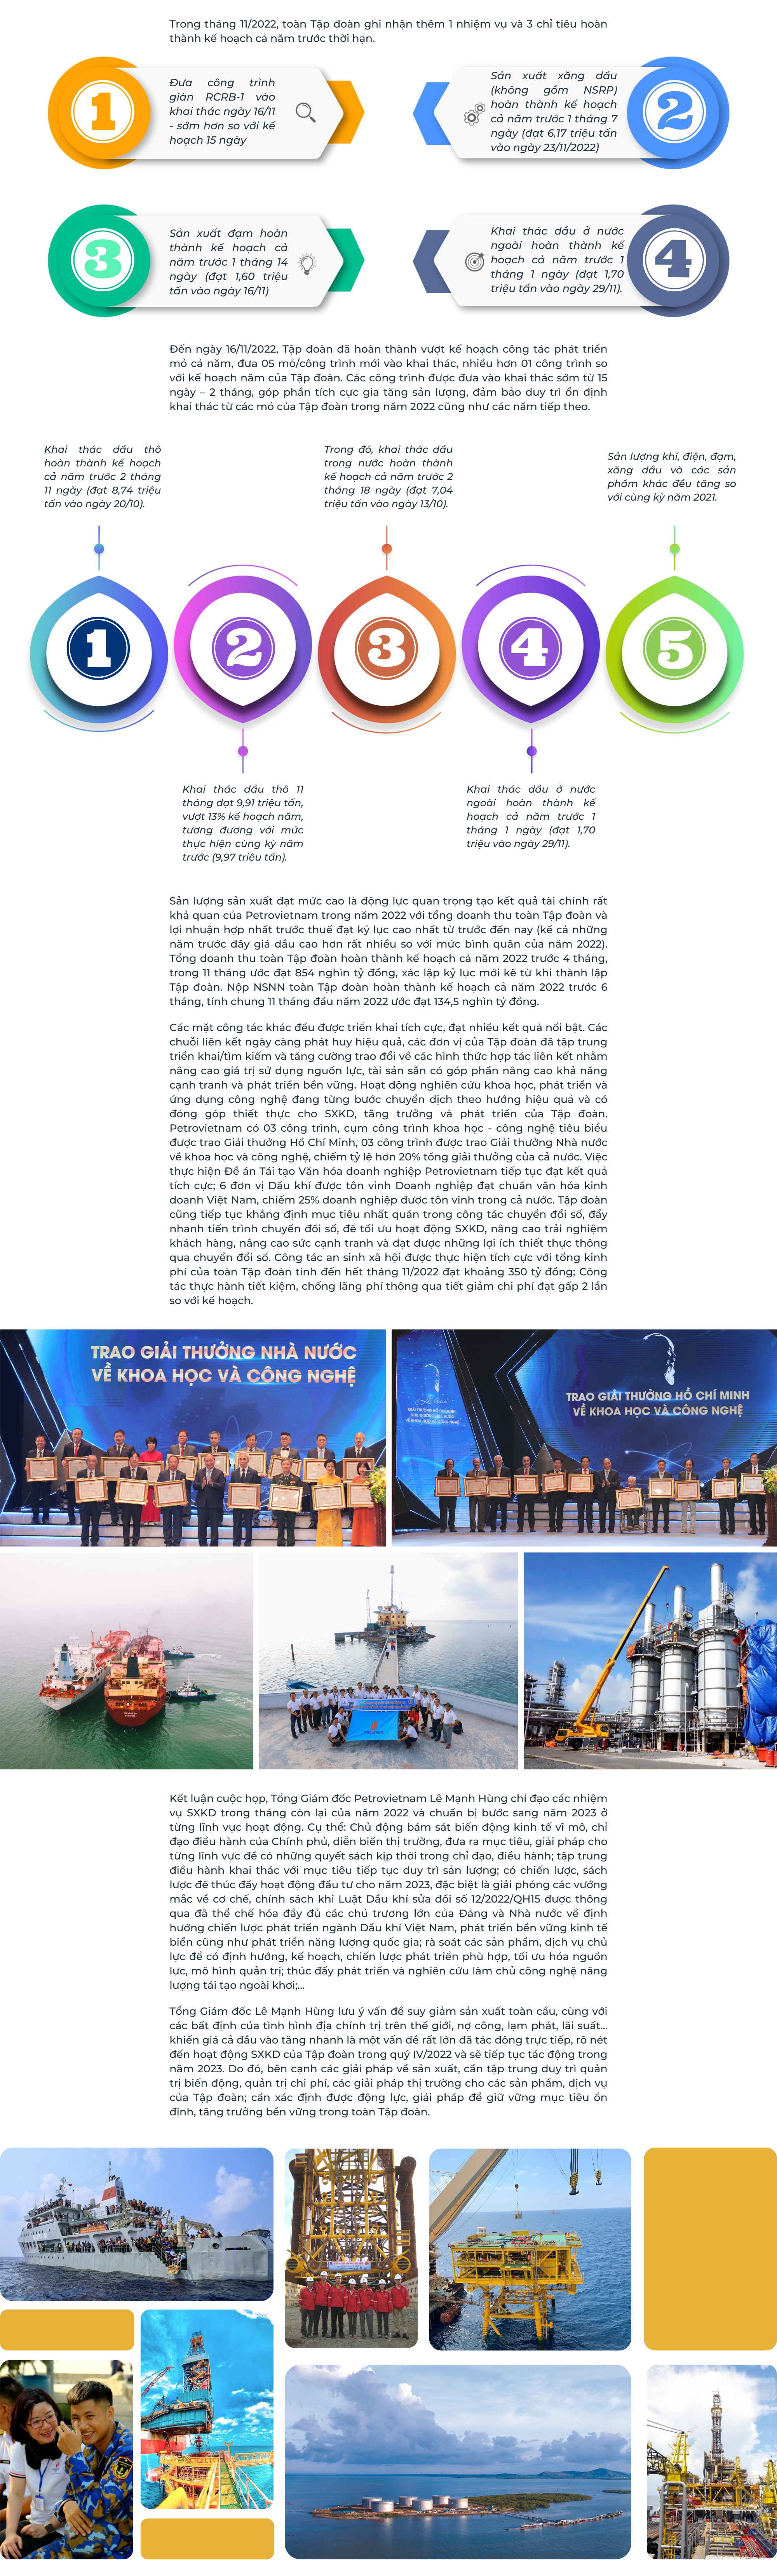 [E-Magazine] Petrovietnam về đích sớm các chỉ tiêu sản xuất kinh doanh năm 2022, dự kiến thiết lập kỷ lục mới của ngành Dầu khí Việt Nam